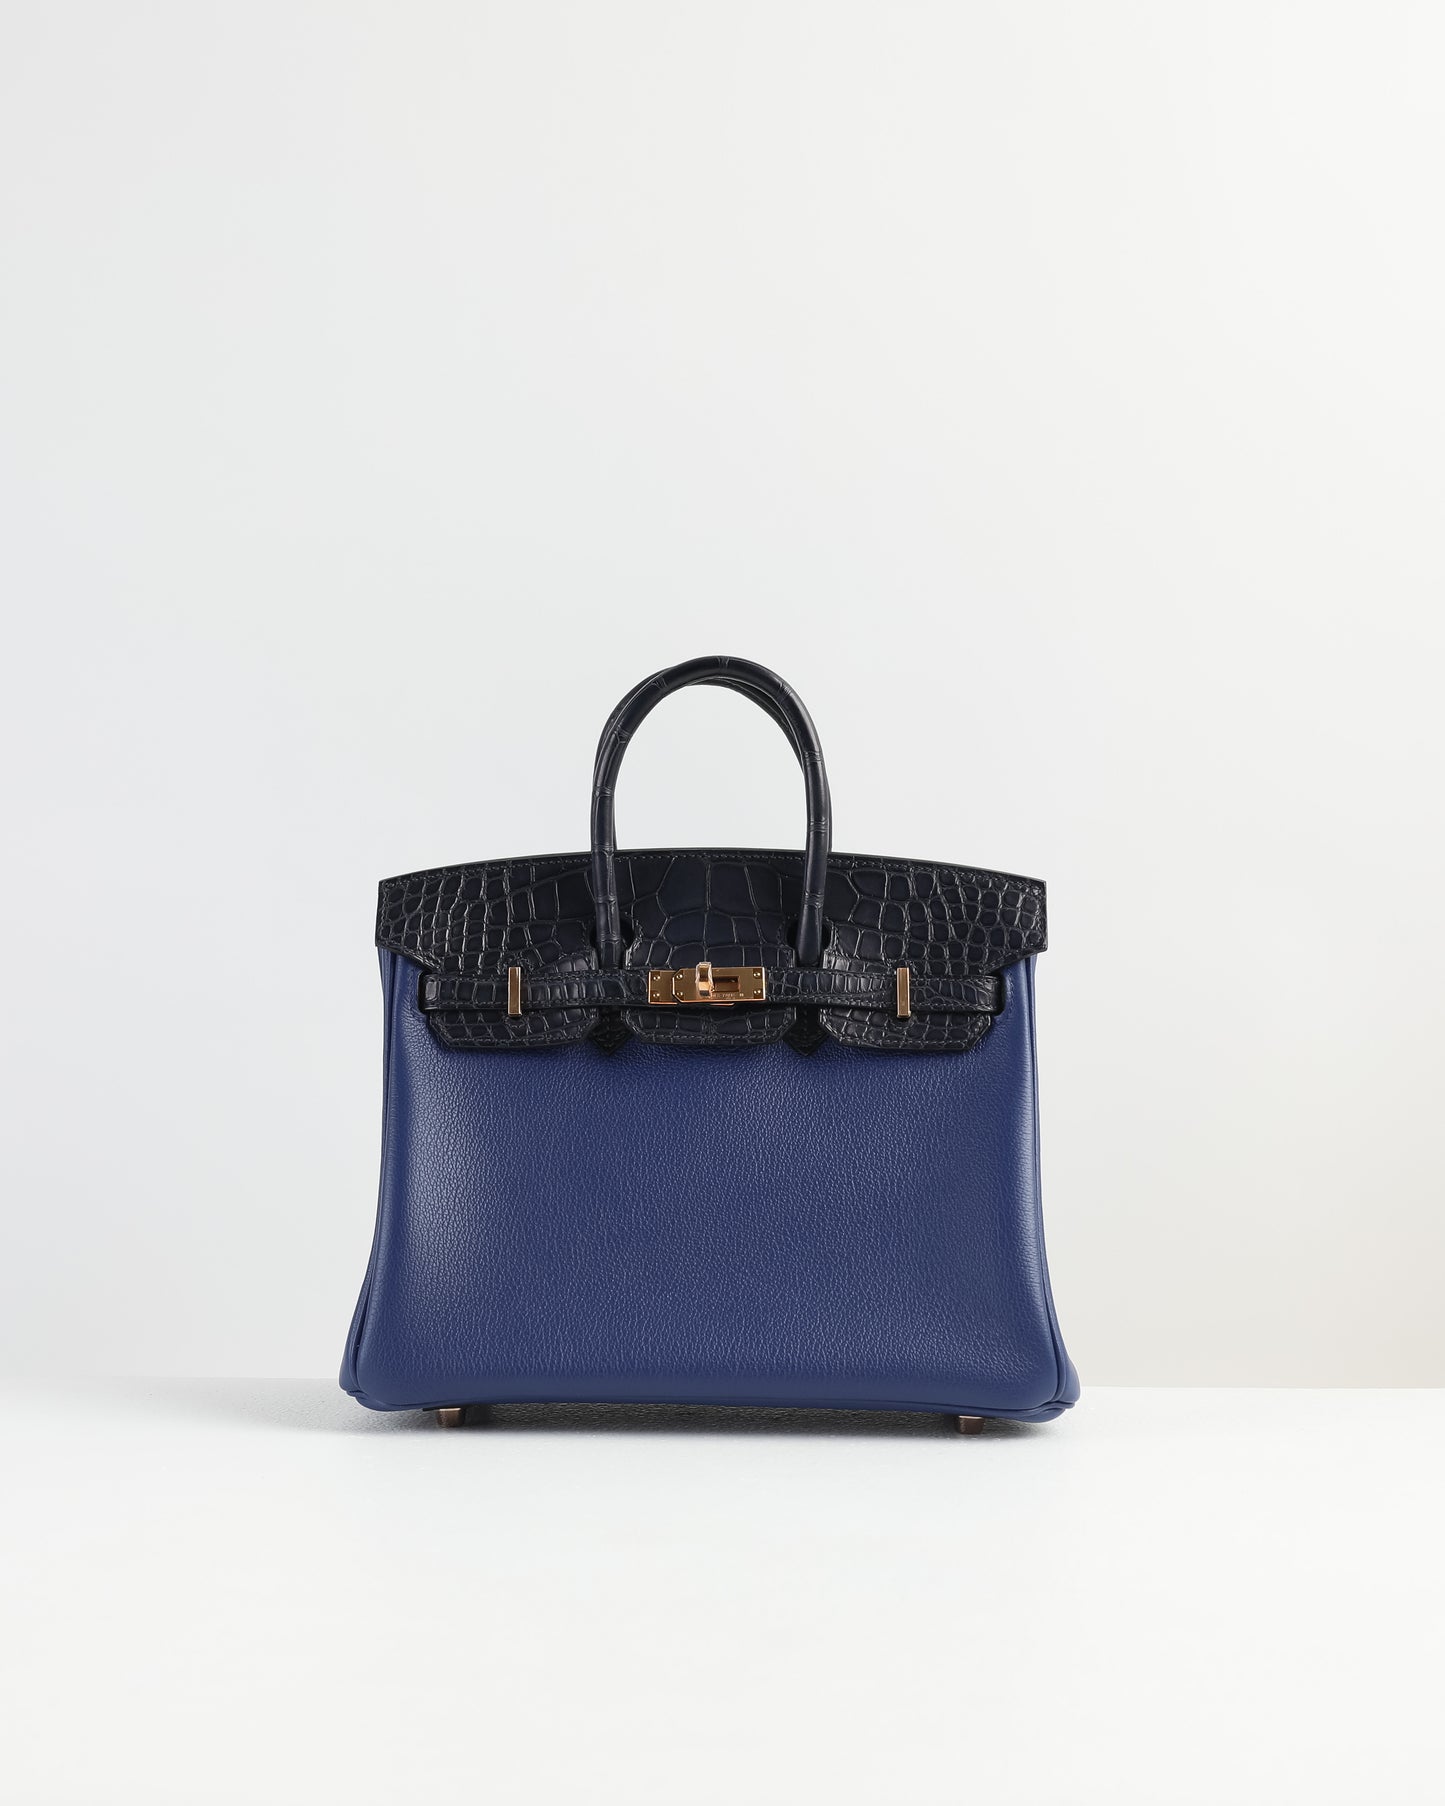 Limited edition Hermès 25cm Birkin Touch in Bleu Saphir and Bleu Marine 💙  #hermes #birkin25 #hermestouch #priveporter